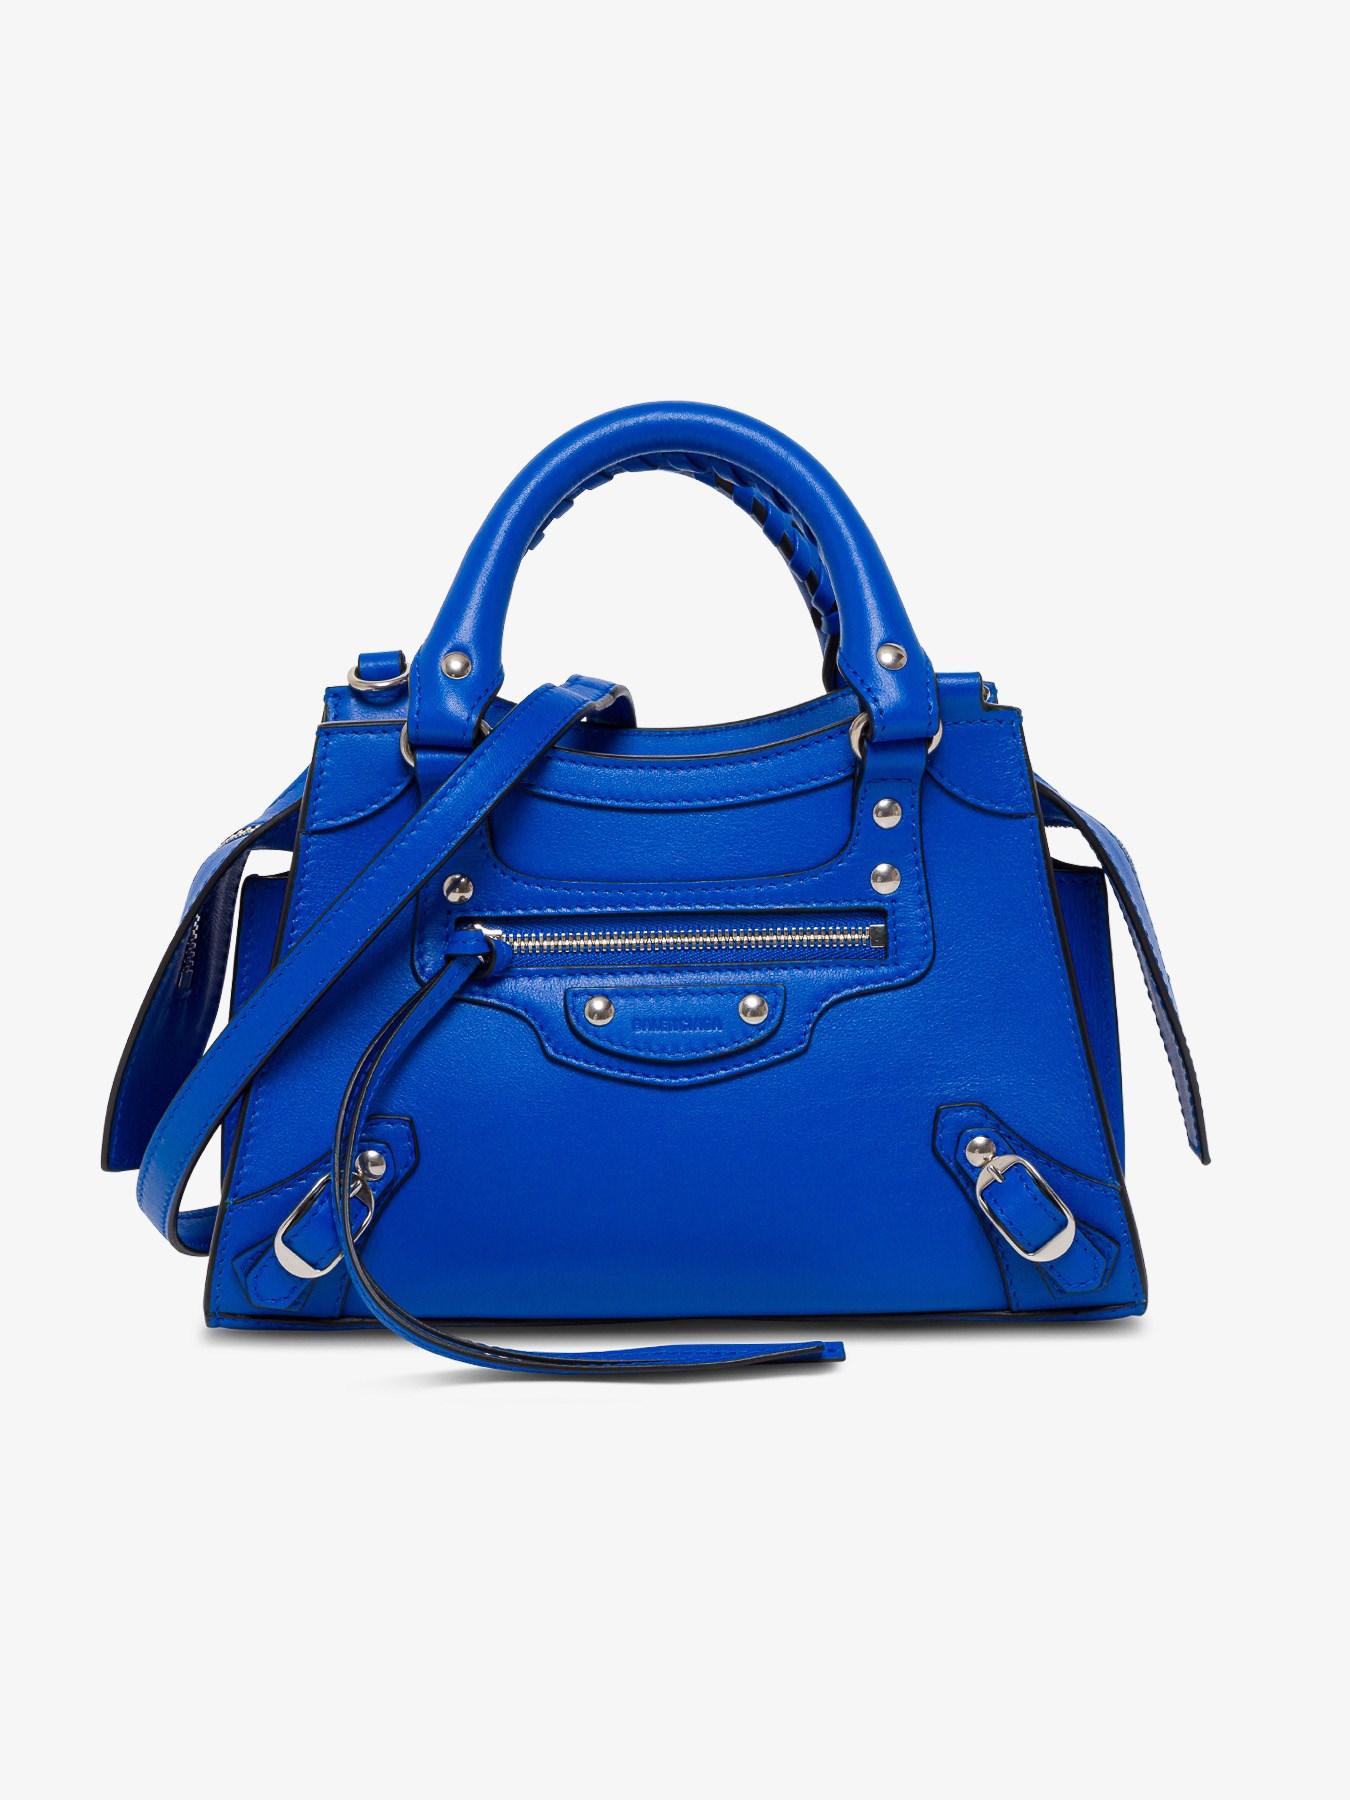 Balenciaga Neo Classic City Bag Leather Mini Blue 2154271